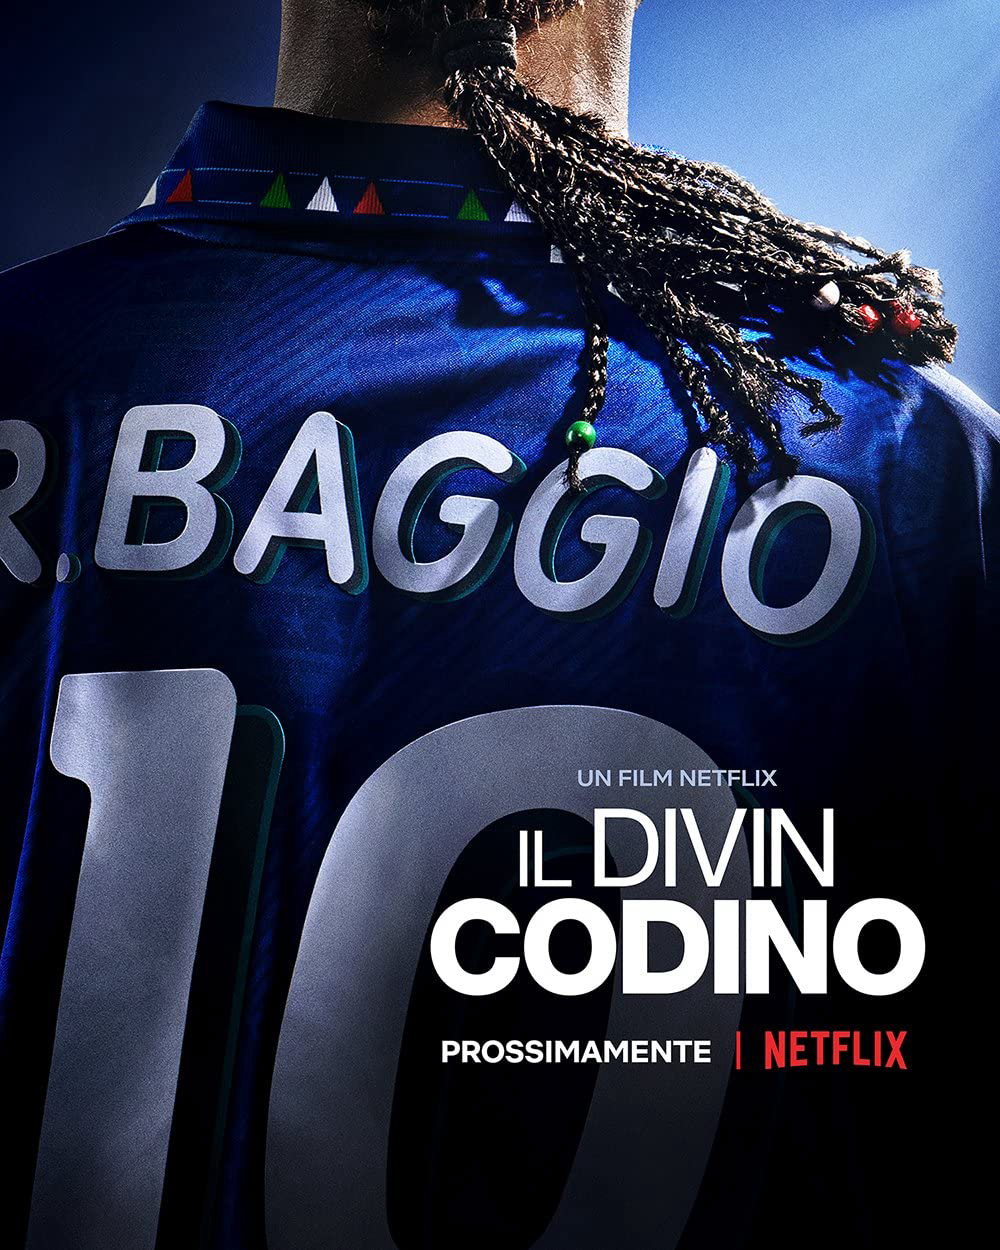 Xem Phim Roberto Baggio: Đuôi ngựa thần thánh (Baggio: The Divine Ponytail)